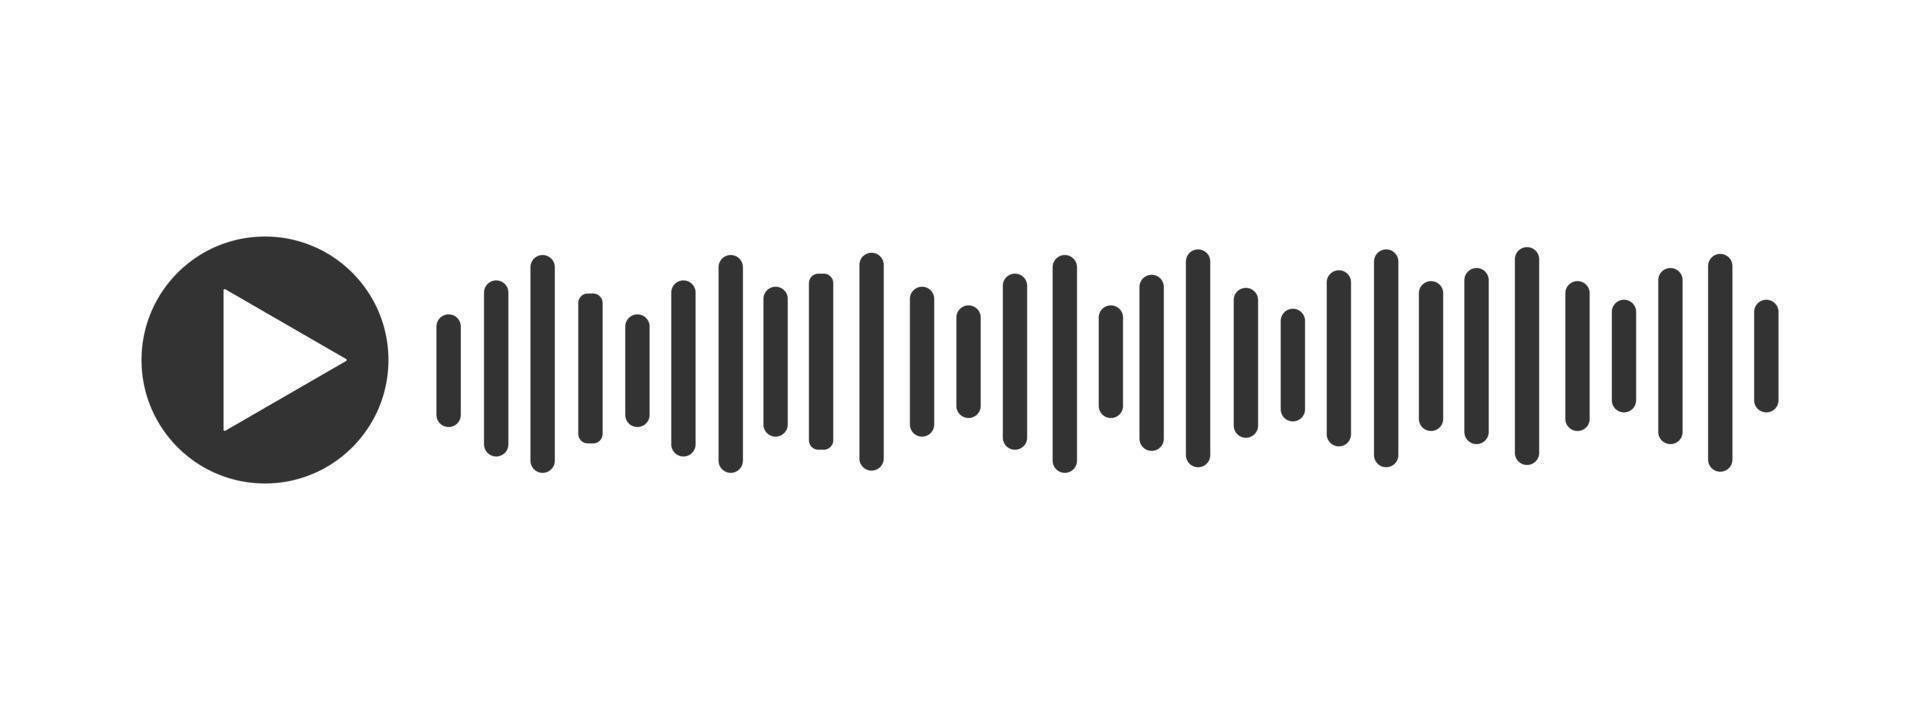 voz mensaje signo. audio charla elemento con jugar icono y sonido ola vector